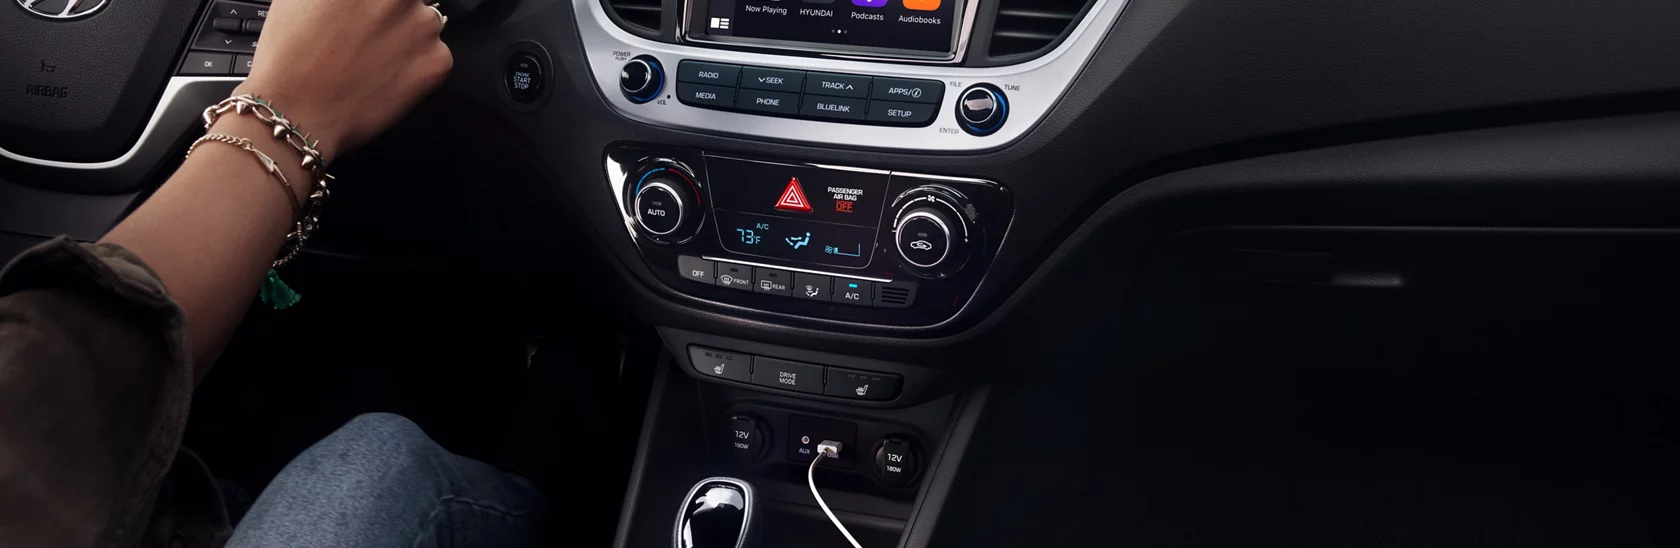 2022 現代汽車 Accent Apple CarPlay 與 Android Auto